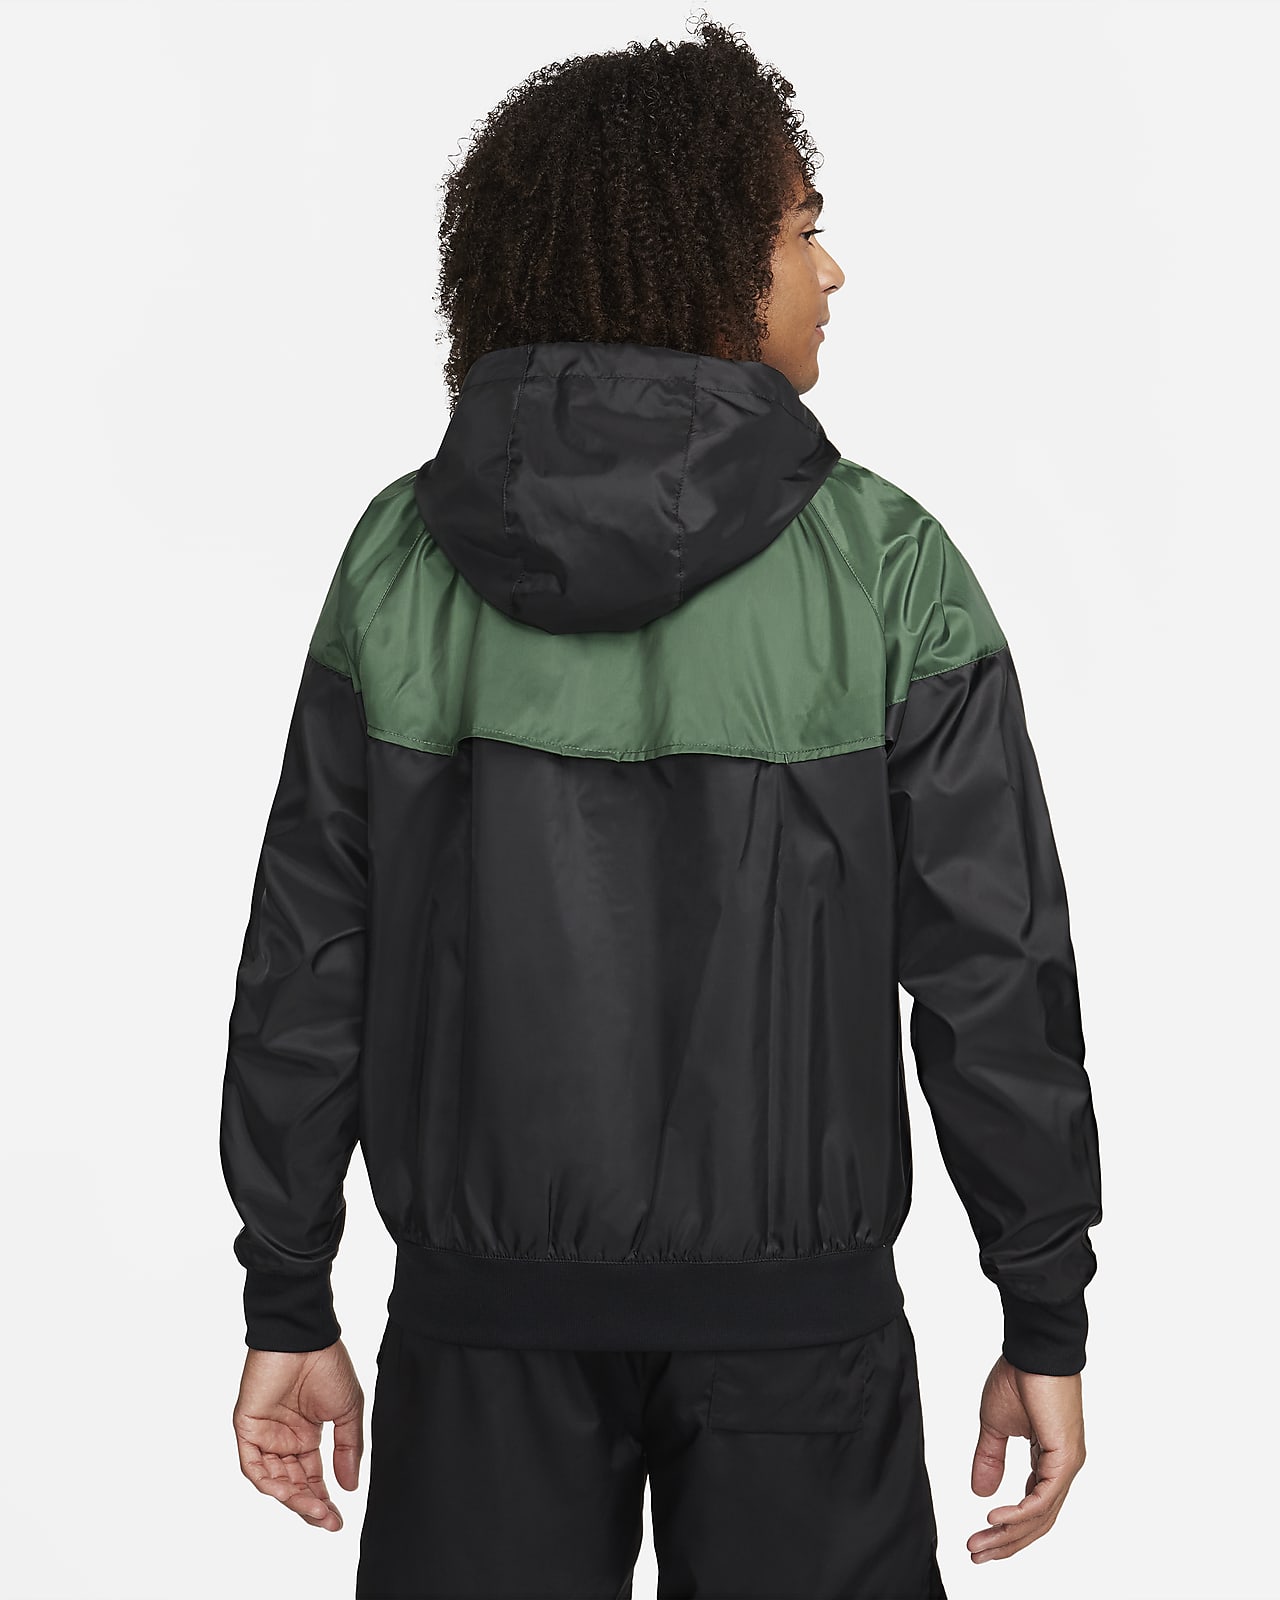 Hooded Nike Men\'s Windrunner Sportswear Jacket.